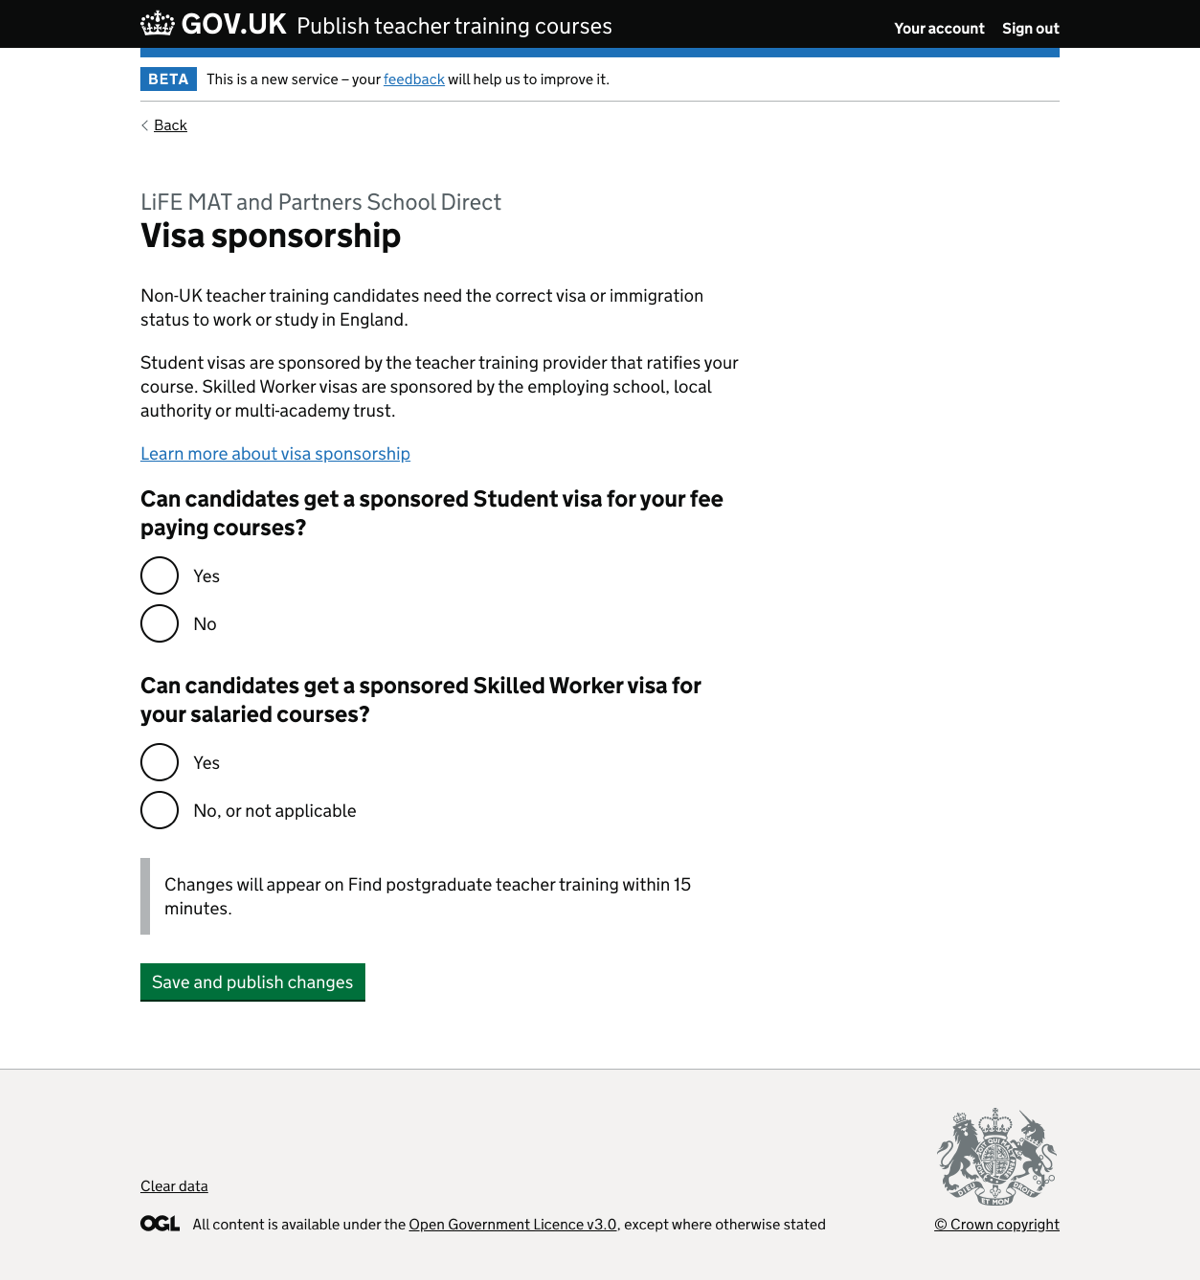 Visa sponsorship page